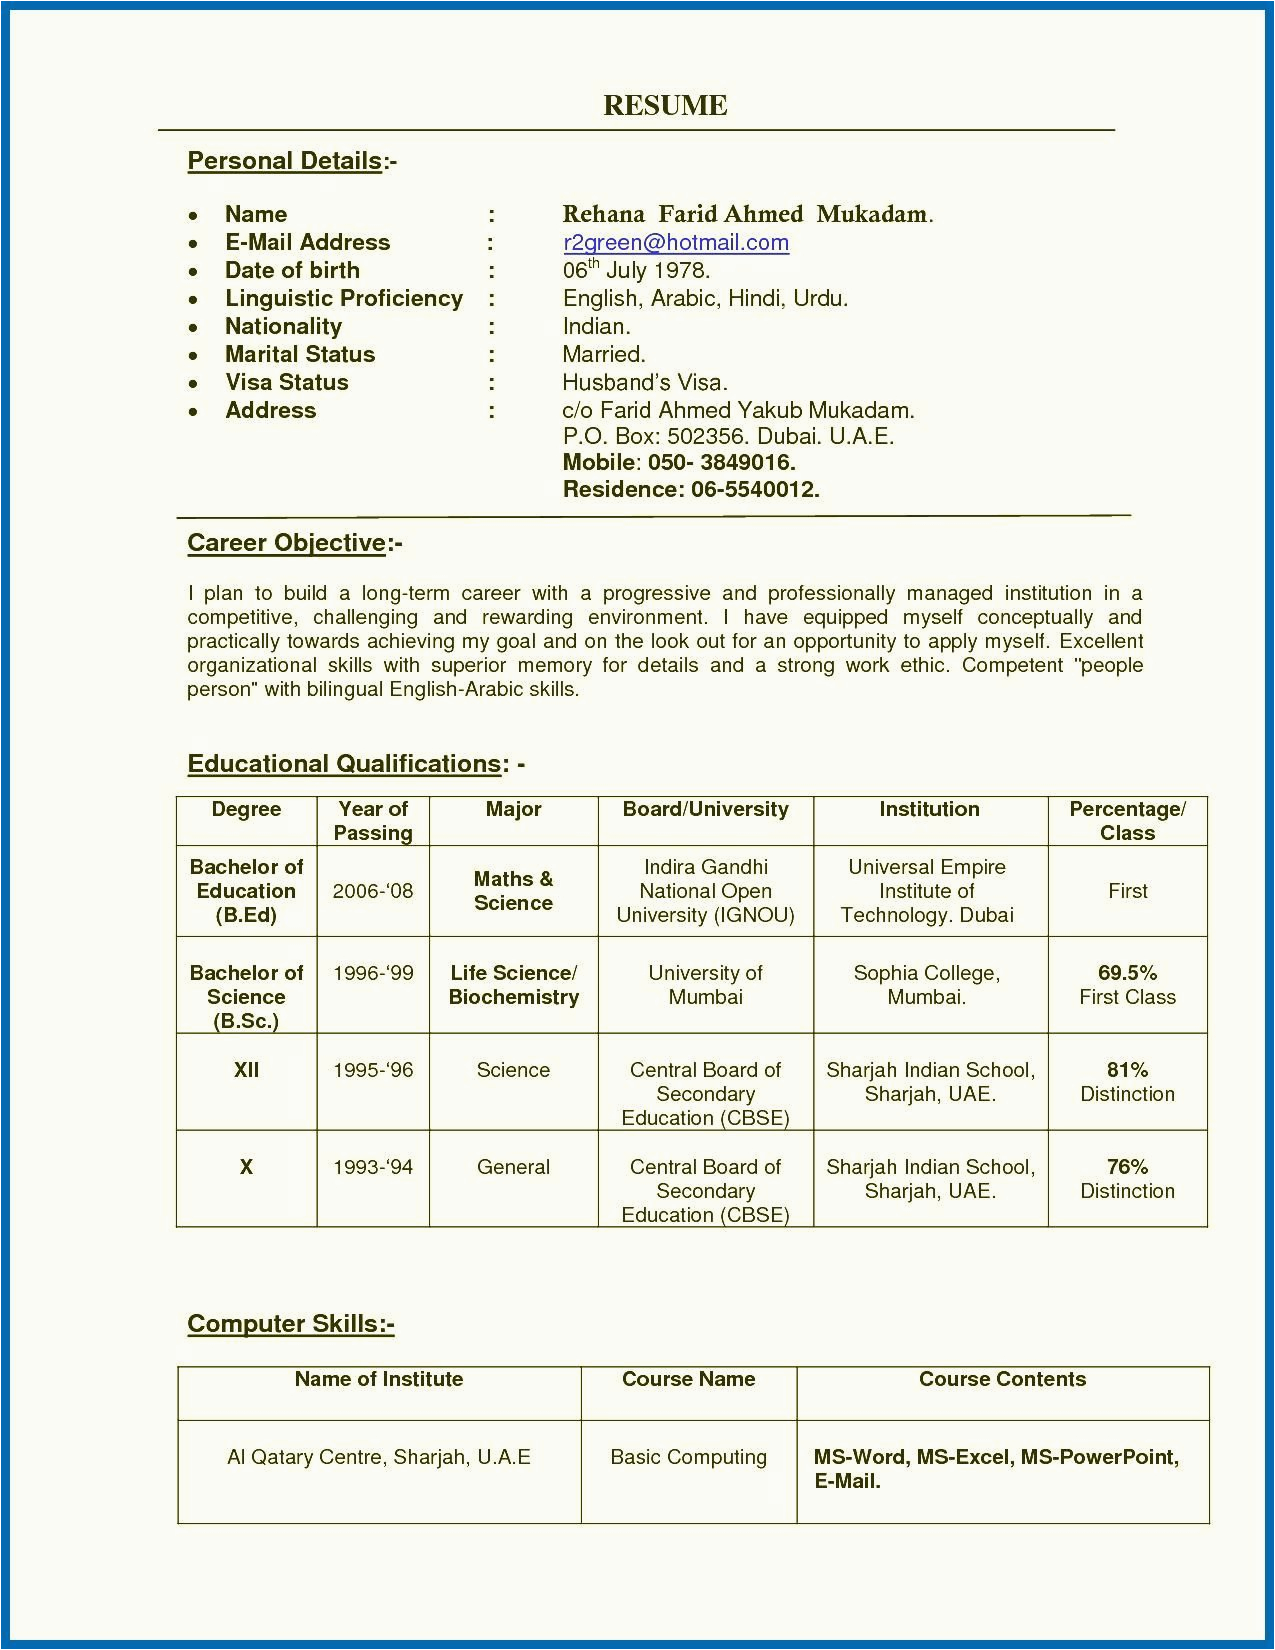 Sample Resume for Telugu Teachers In India 79b66e1 Teacher Resume format Doc India